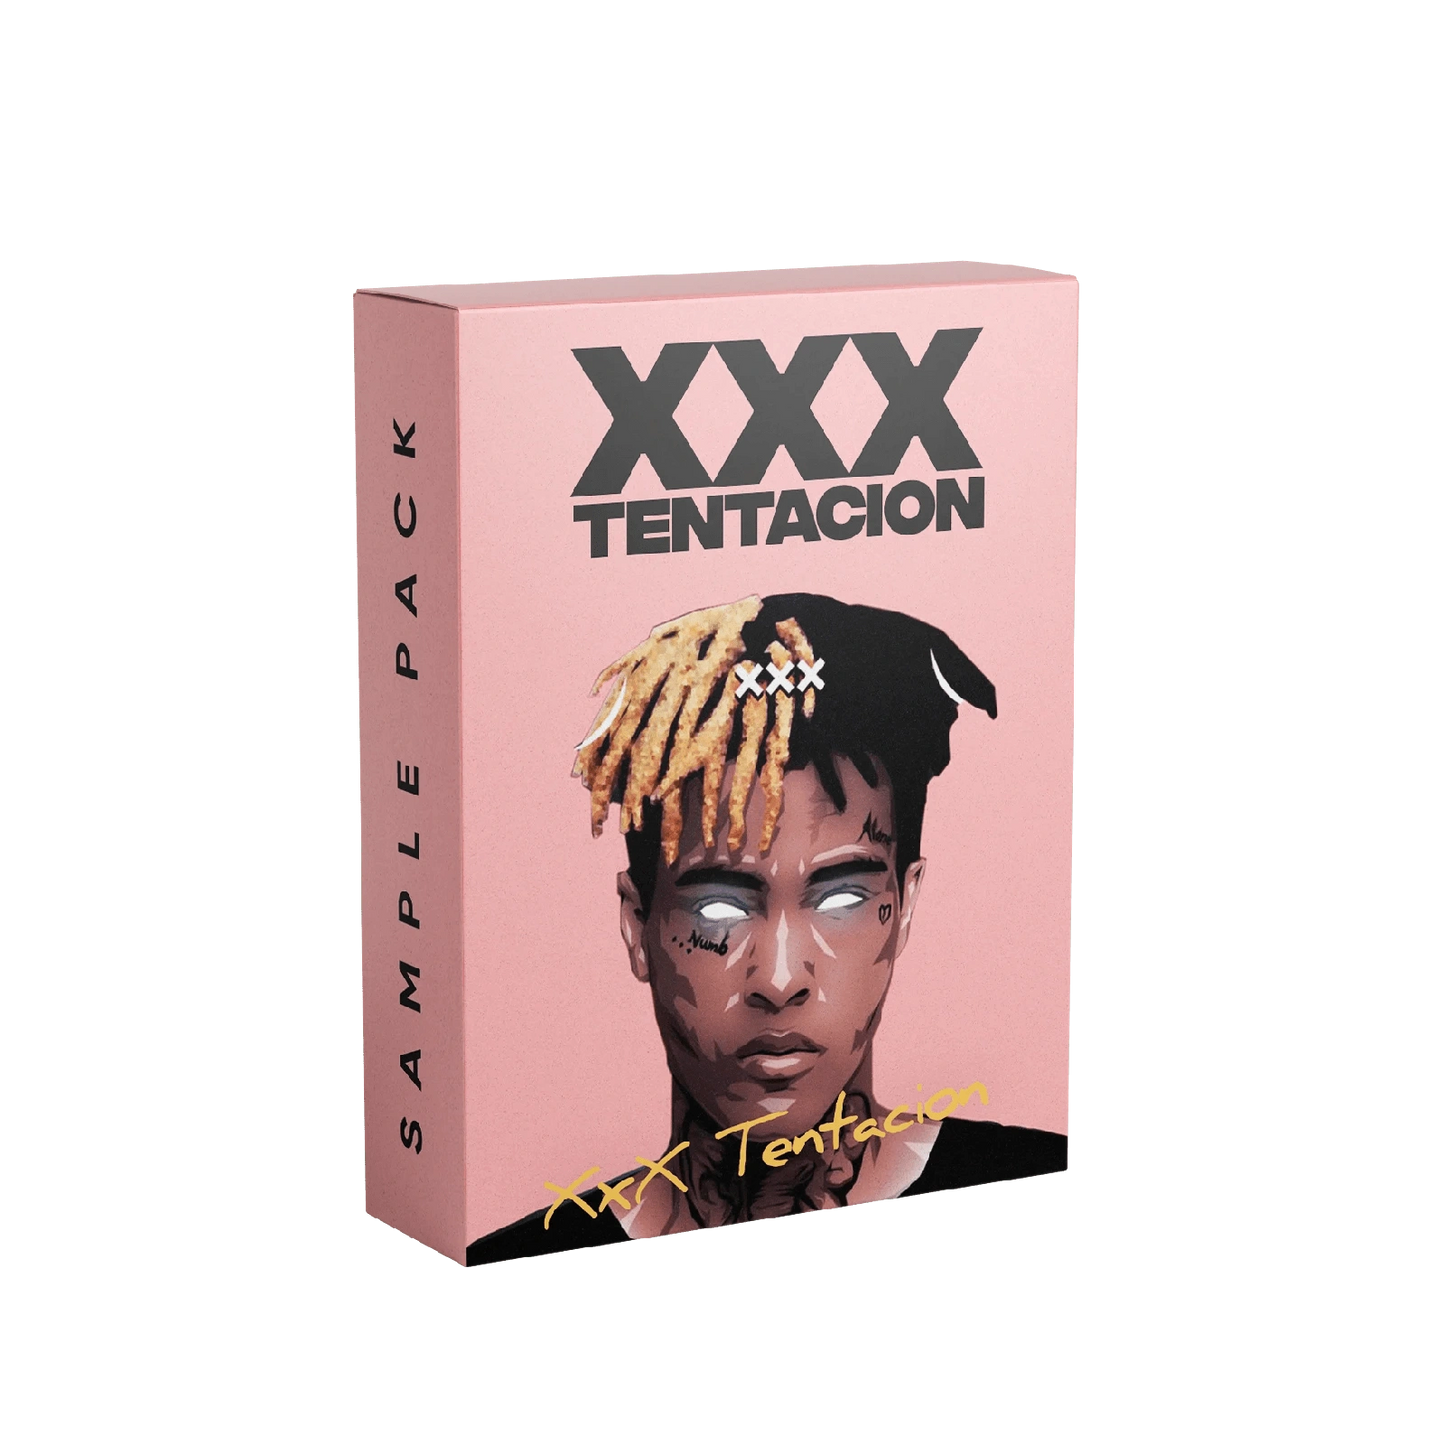 XXXTentacion Sample Pack Box Artwork